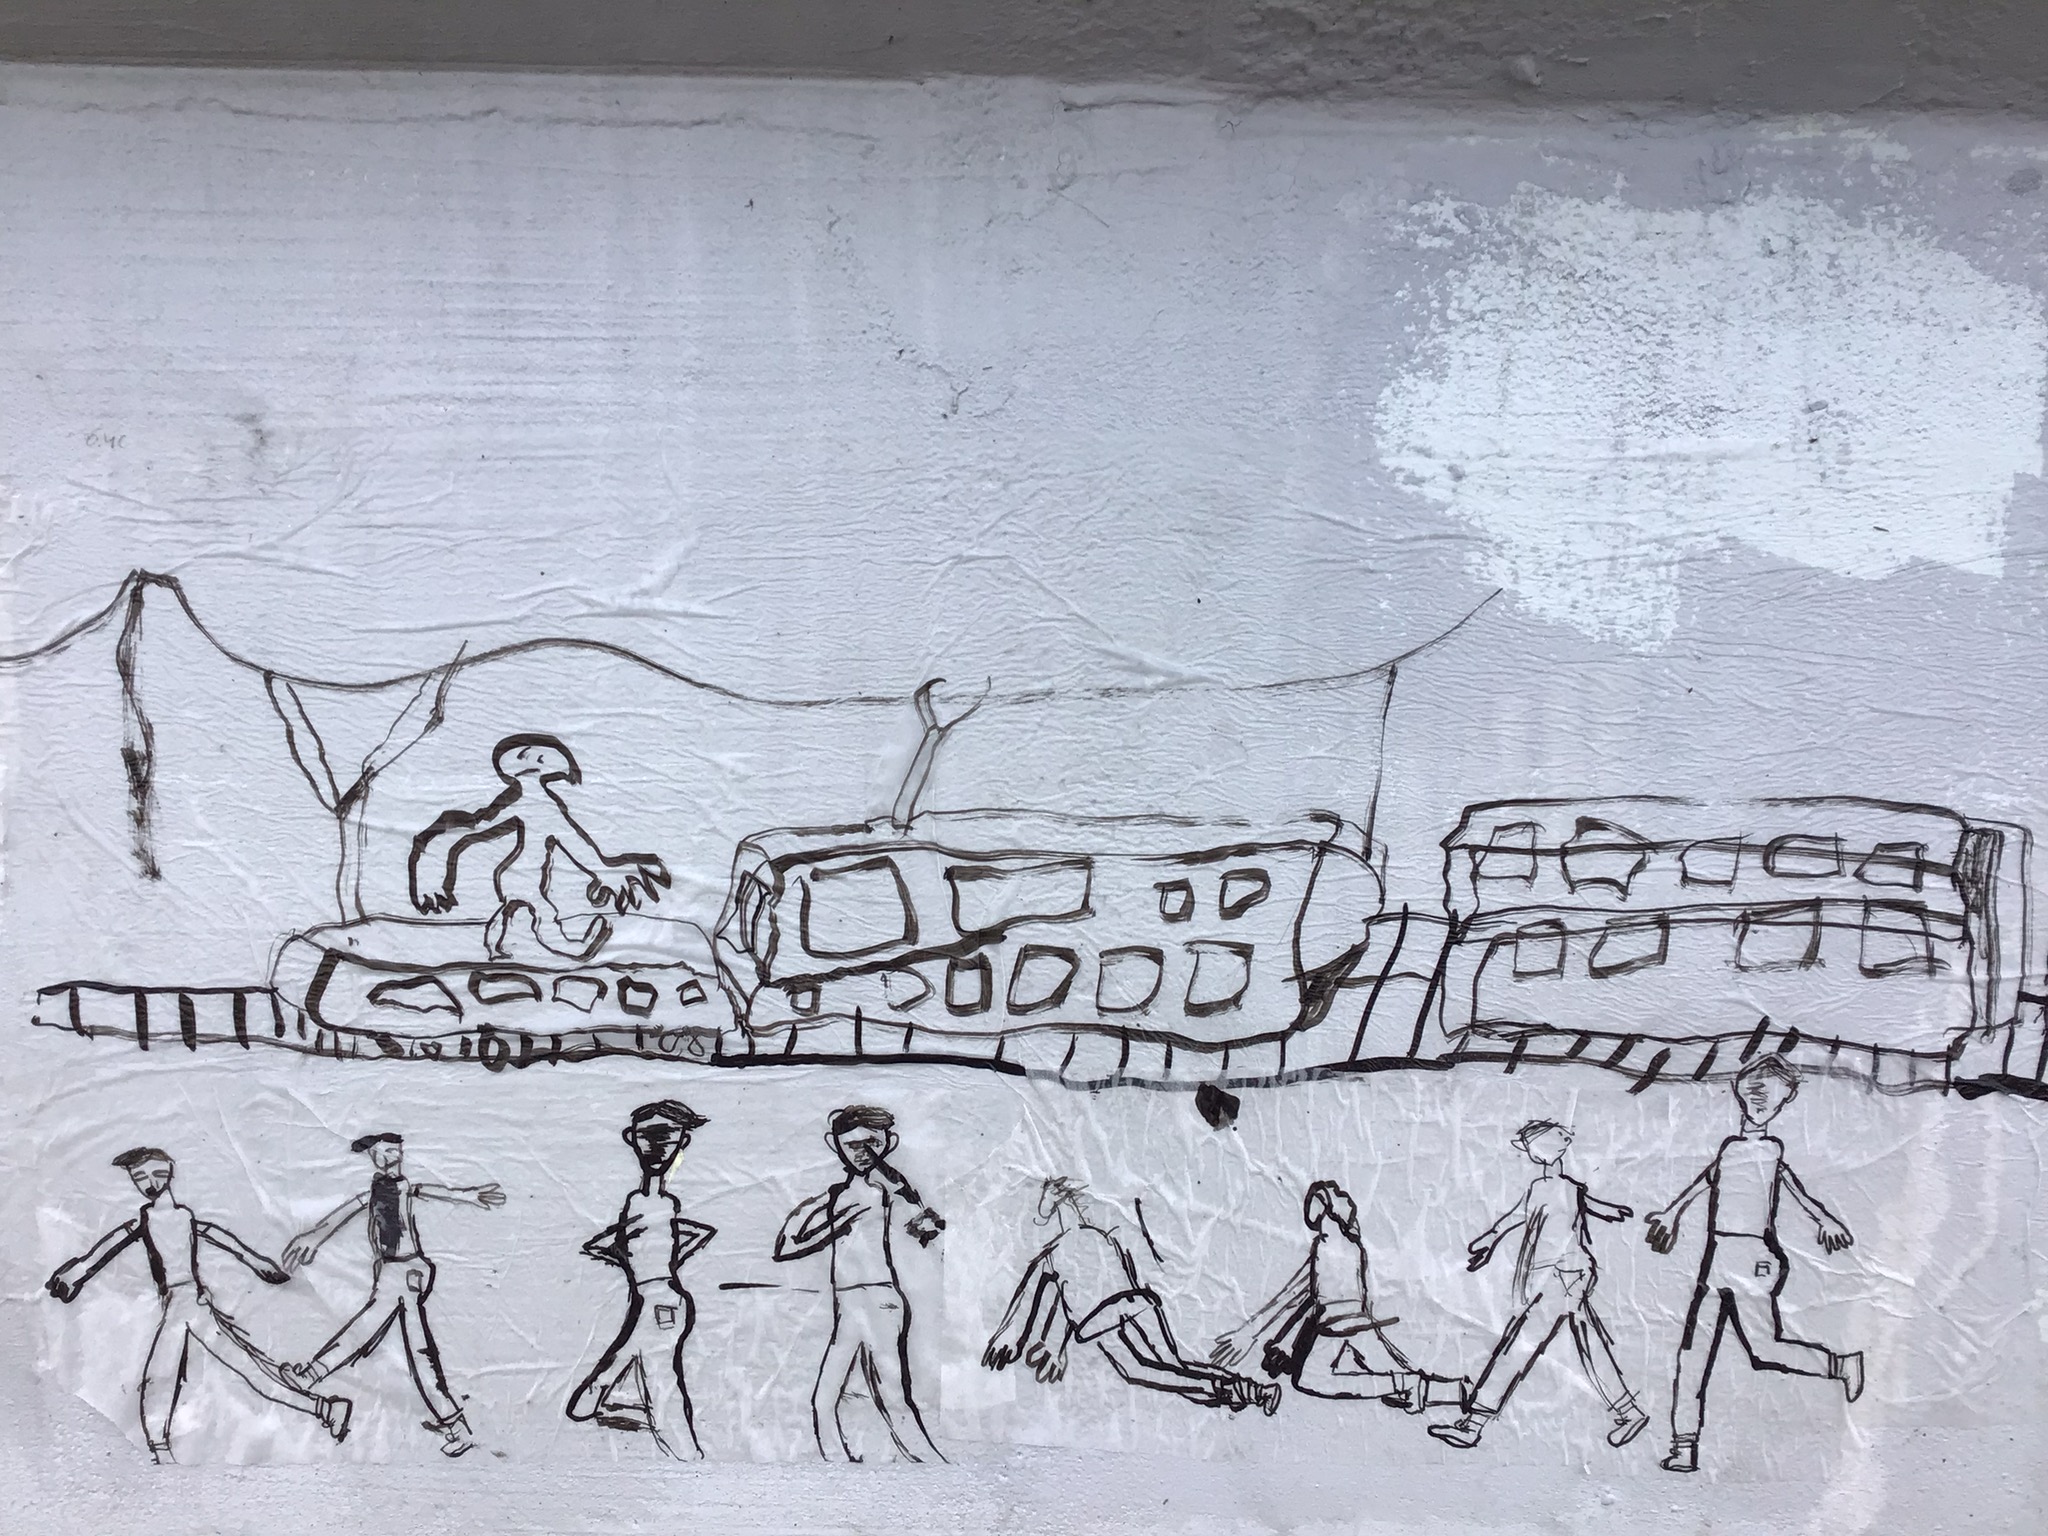 Lähikuva oppilaiden teoksista sillan kaiteessa. Kuvassa juna kiskoilla sekä ihmishahmoja